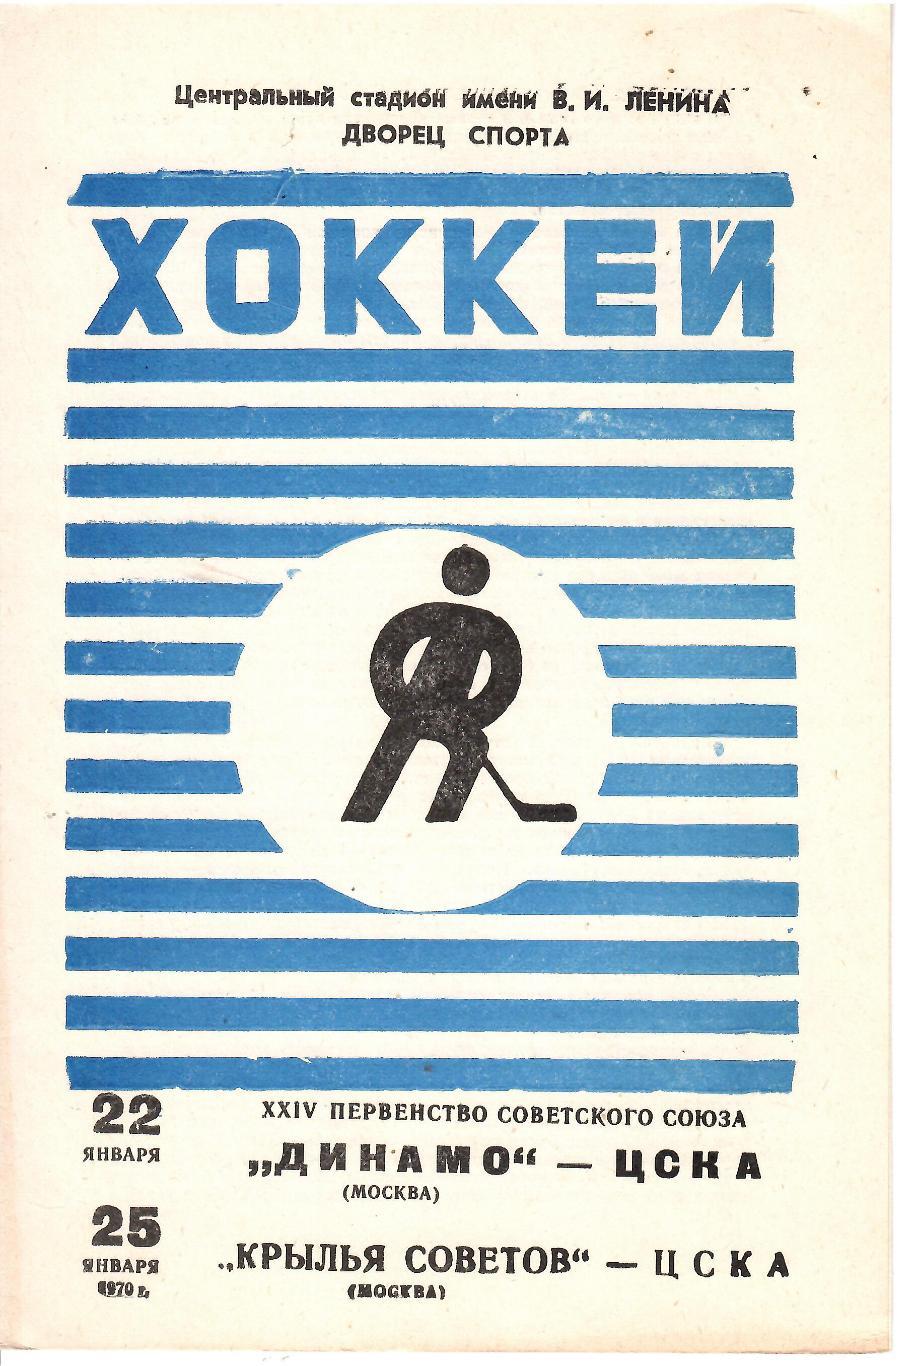 1970 Хоккей Динамо Москва - ЦСКА - Крылья Советов